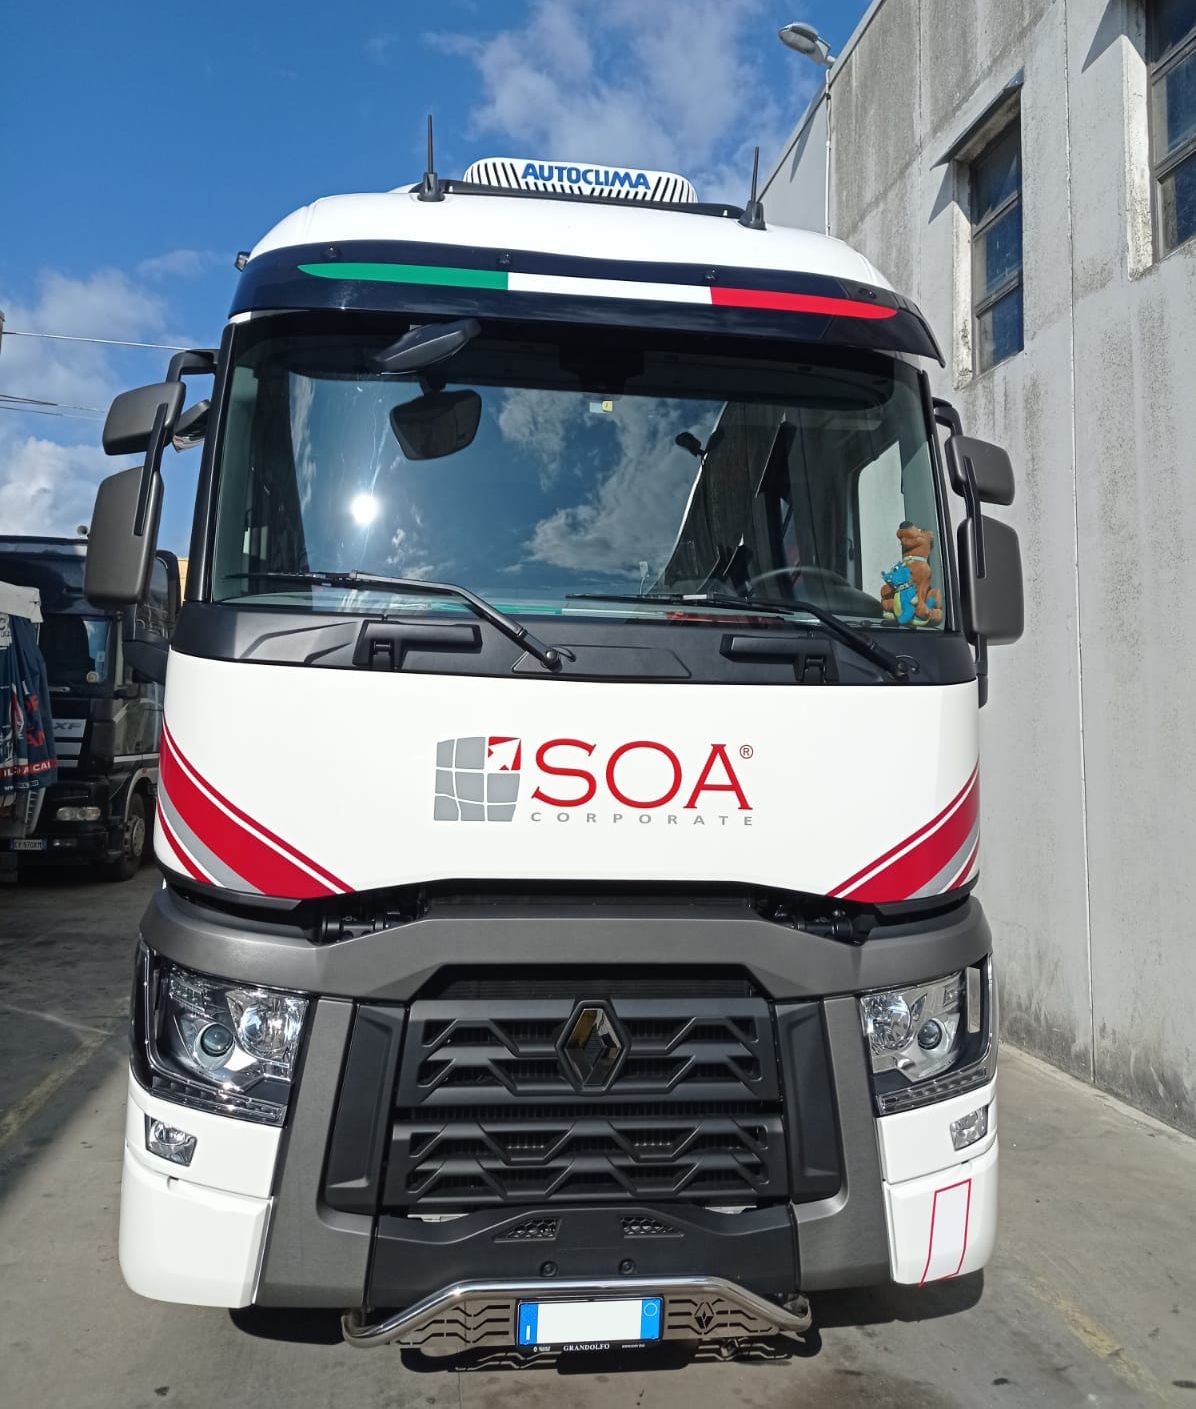 Riparazione trucks, trailer e bus TECNODIESEL SRL a Marcellinara in provincia di Catanzaro